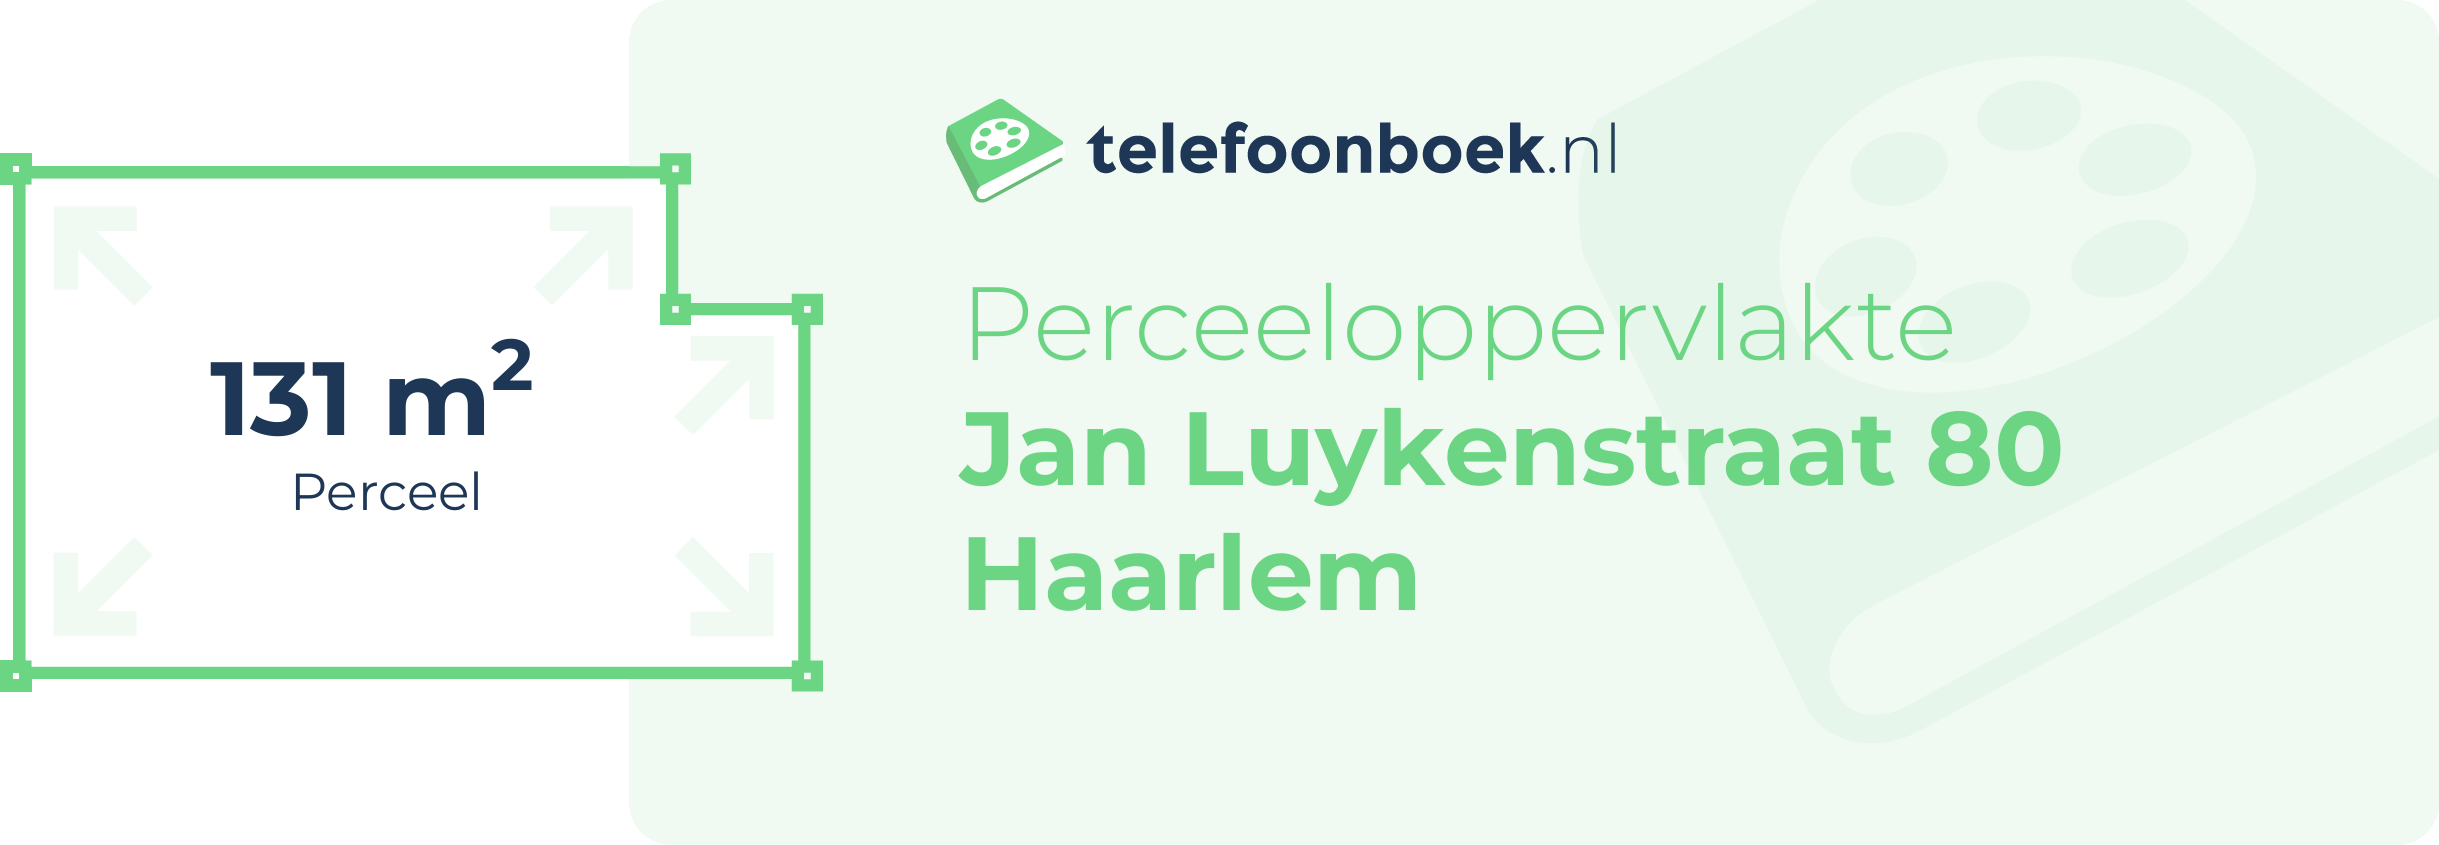 Perceeloppervlakte Jan Luykenstraat 80 Haarlem